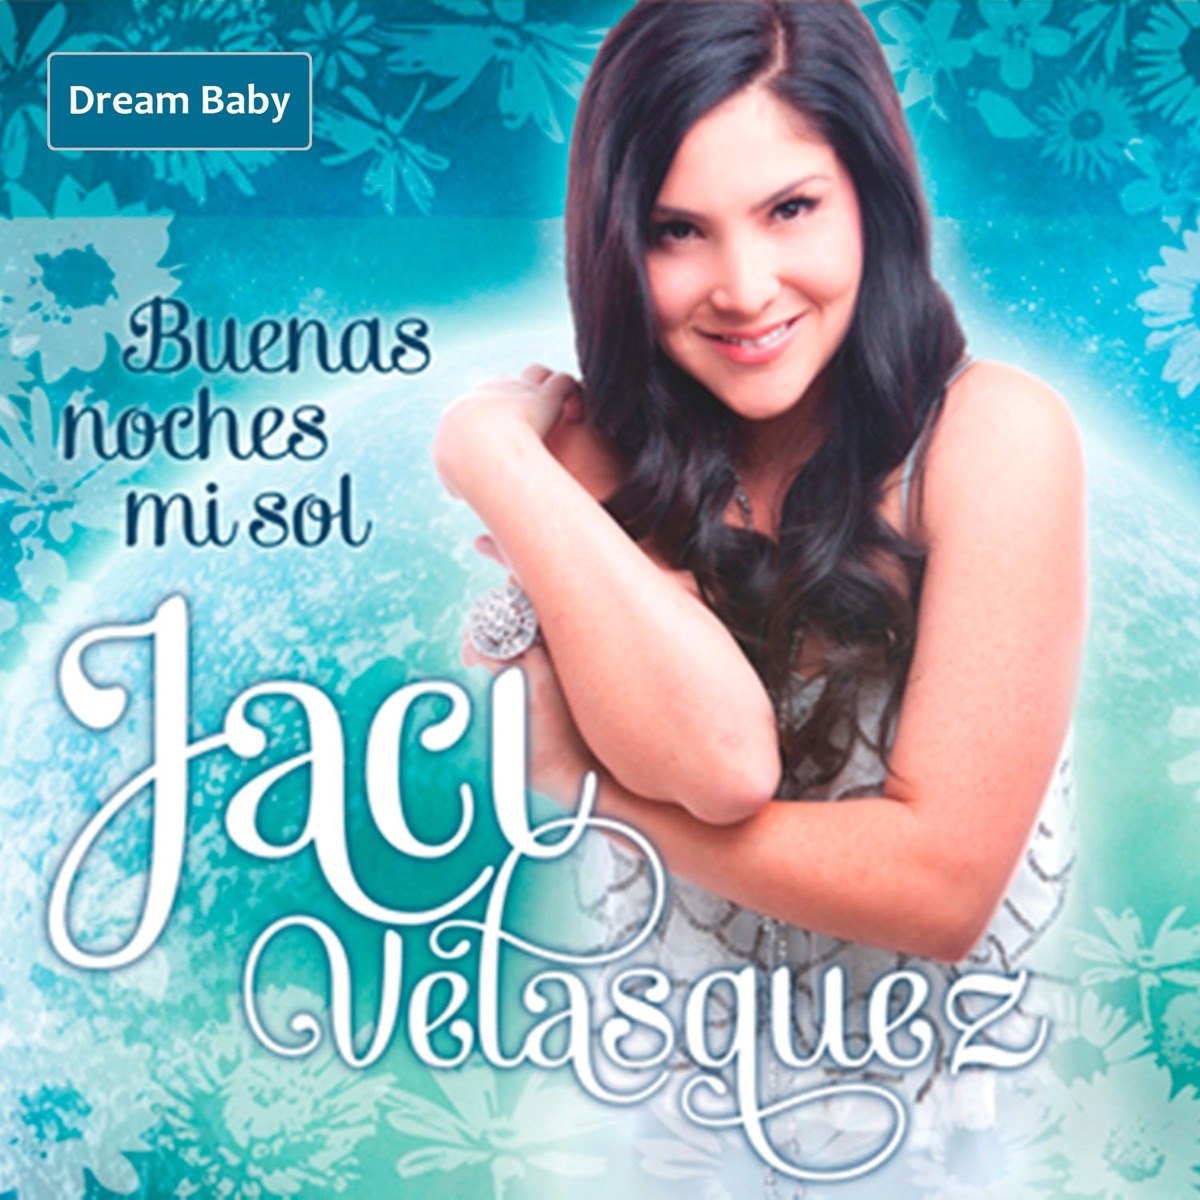 Jaci Velasquez Heavenly Place CD -  Portugal